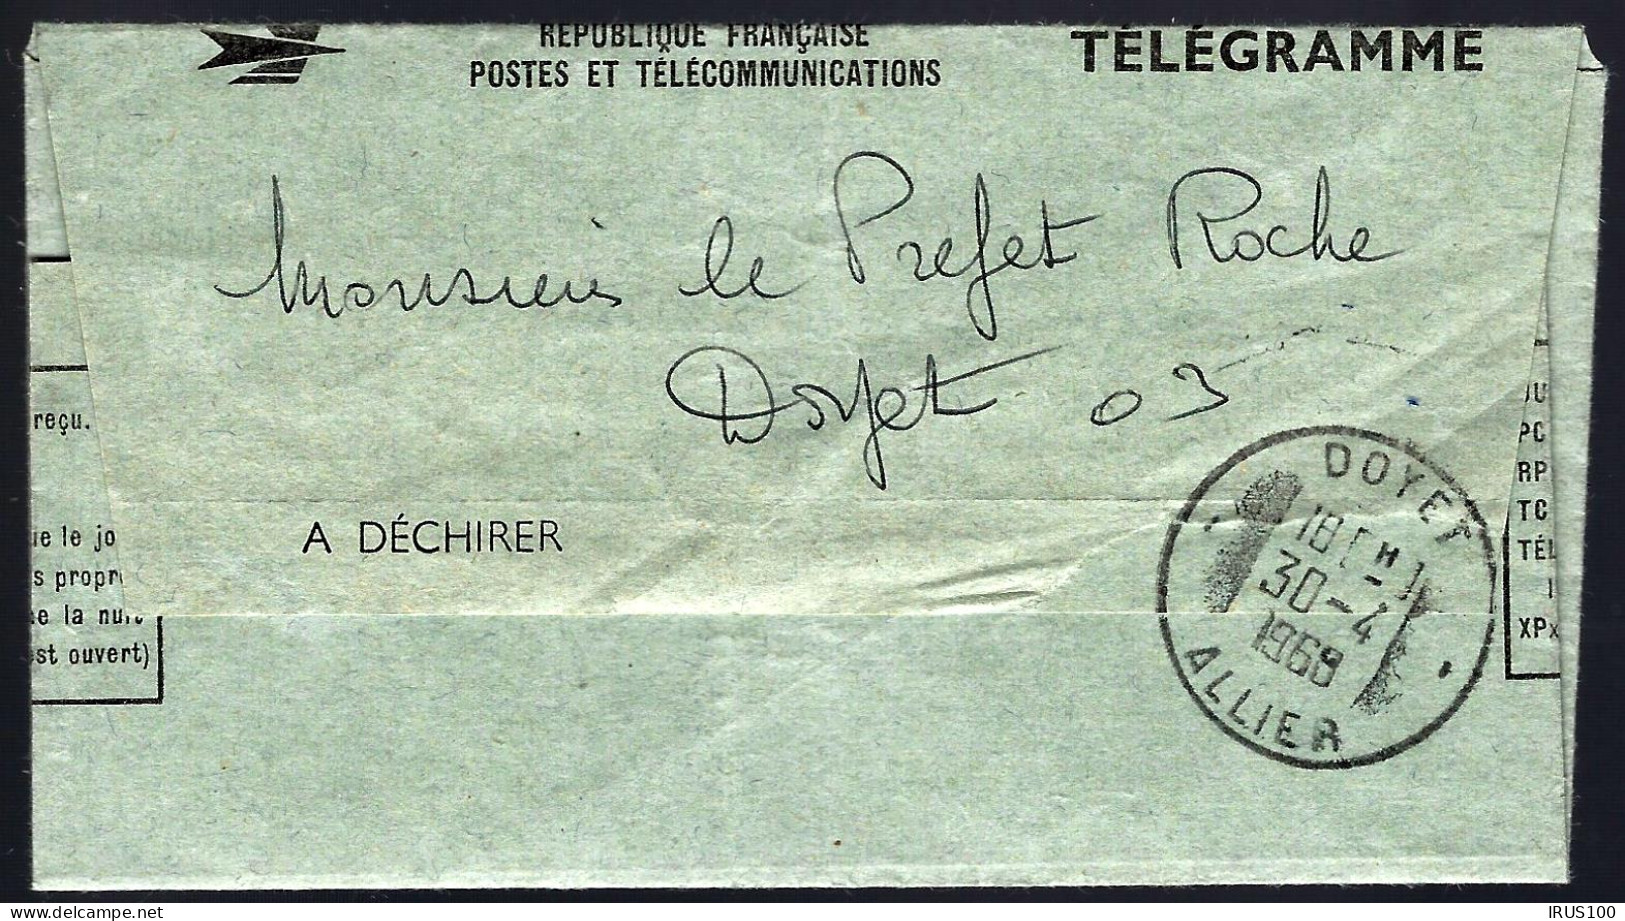 DOYET - 1968 - TÉLÉGRAMME - IMPOSSIBLE DE ME DÉPLACER CE SOIR  - Telegramas Y Teléfonos